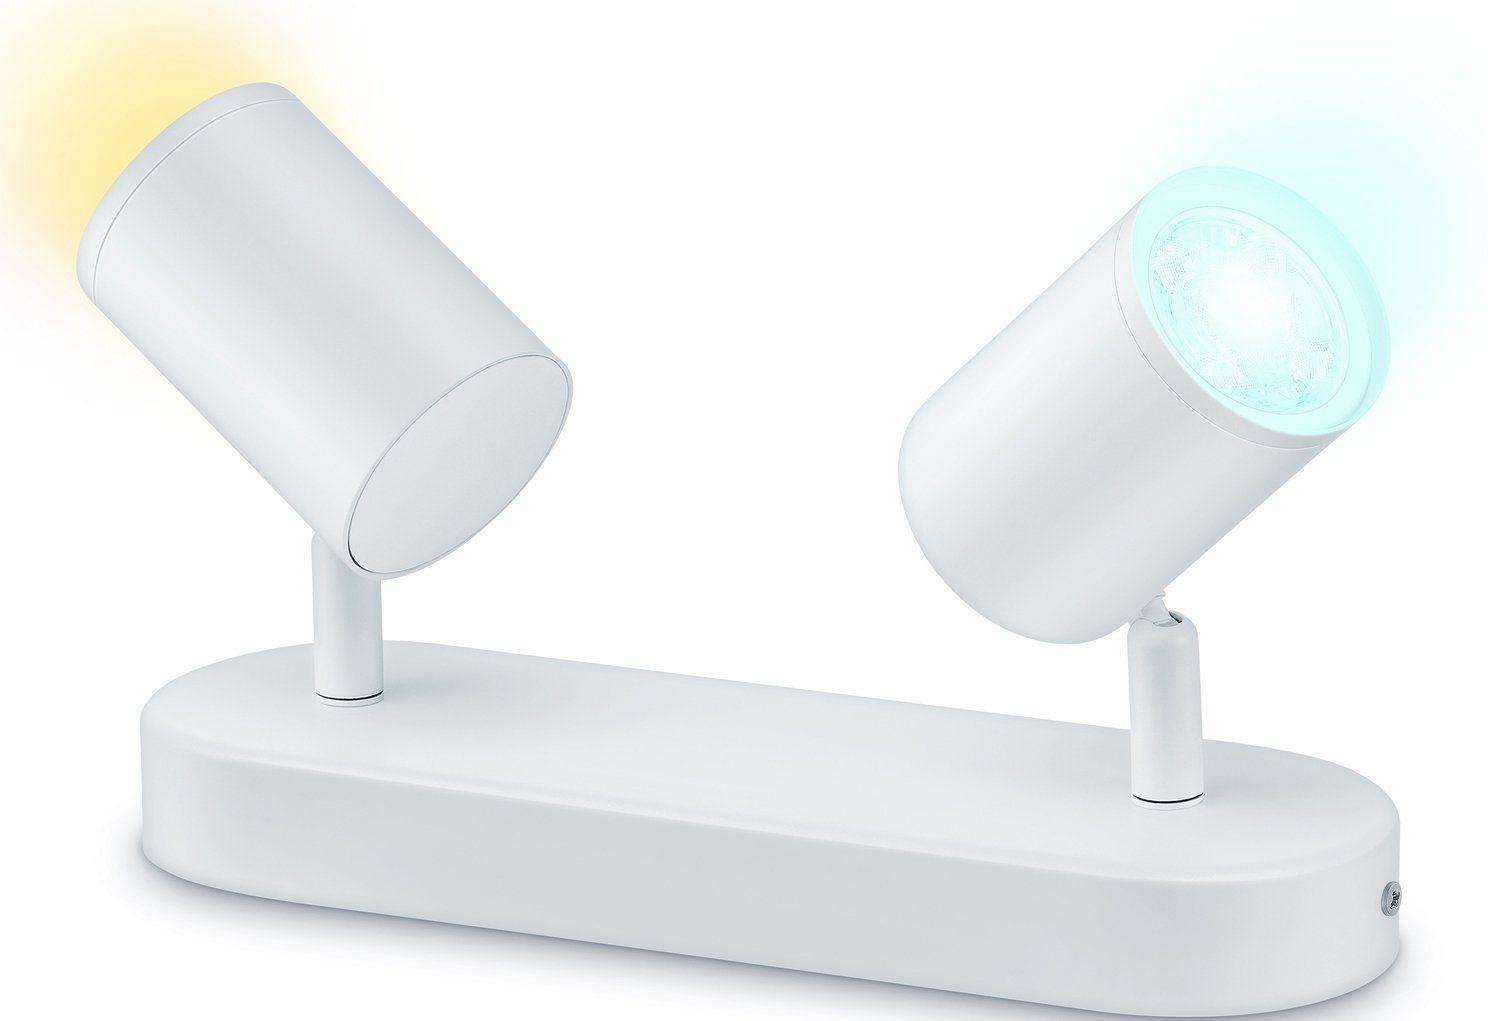 WiZ Deckenleuchte IMAGEO, LED fest integriert, warmweiß - kaltweiß, Leuchte mit zeitgemäßen Design, warm- oder kaltweißes Licht